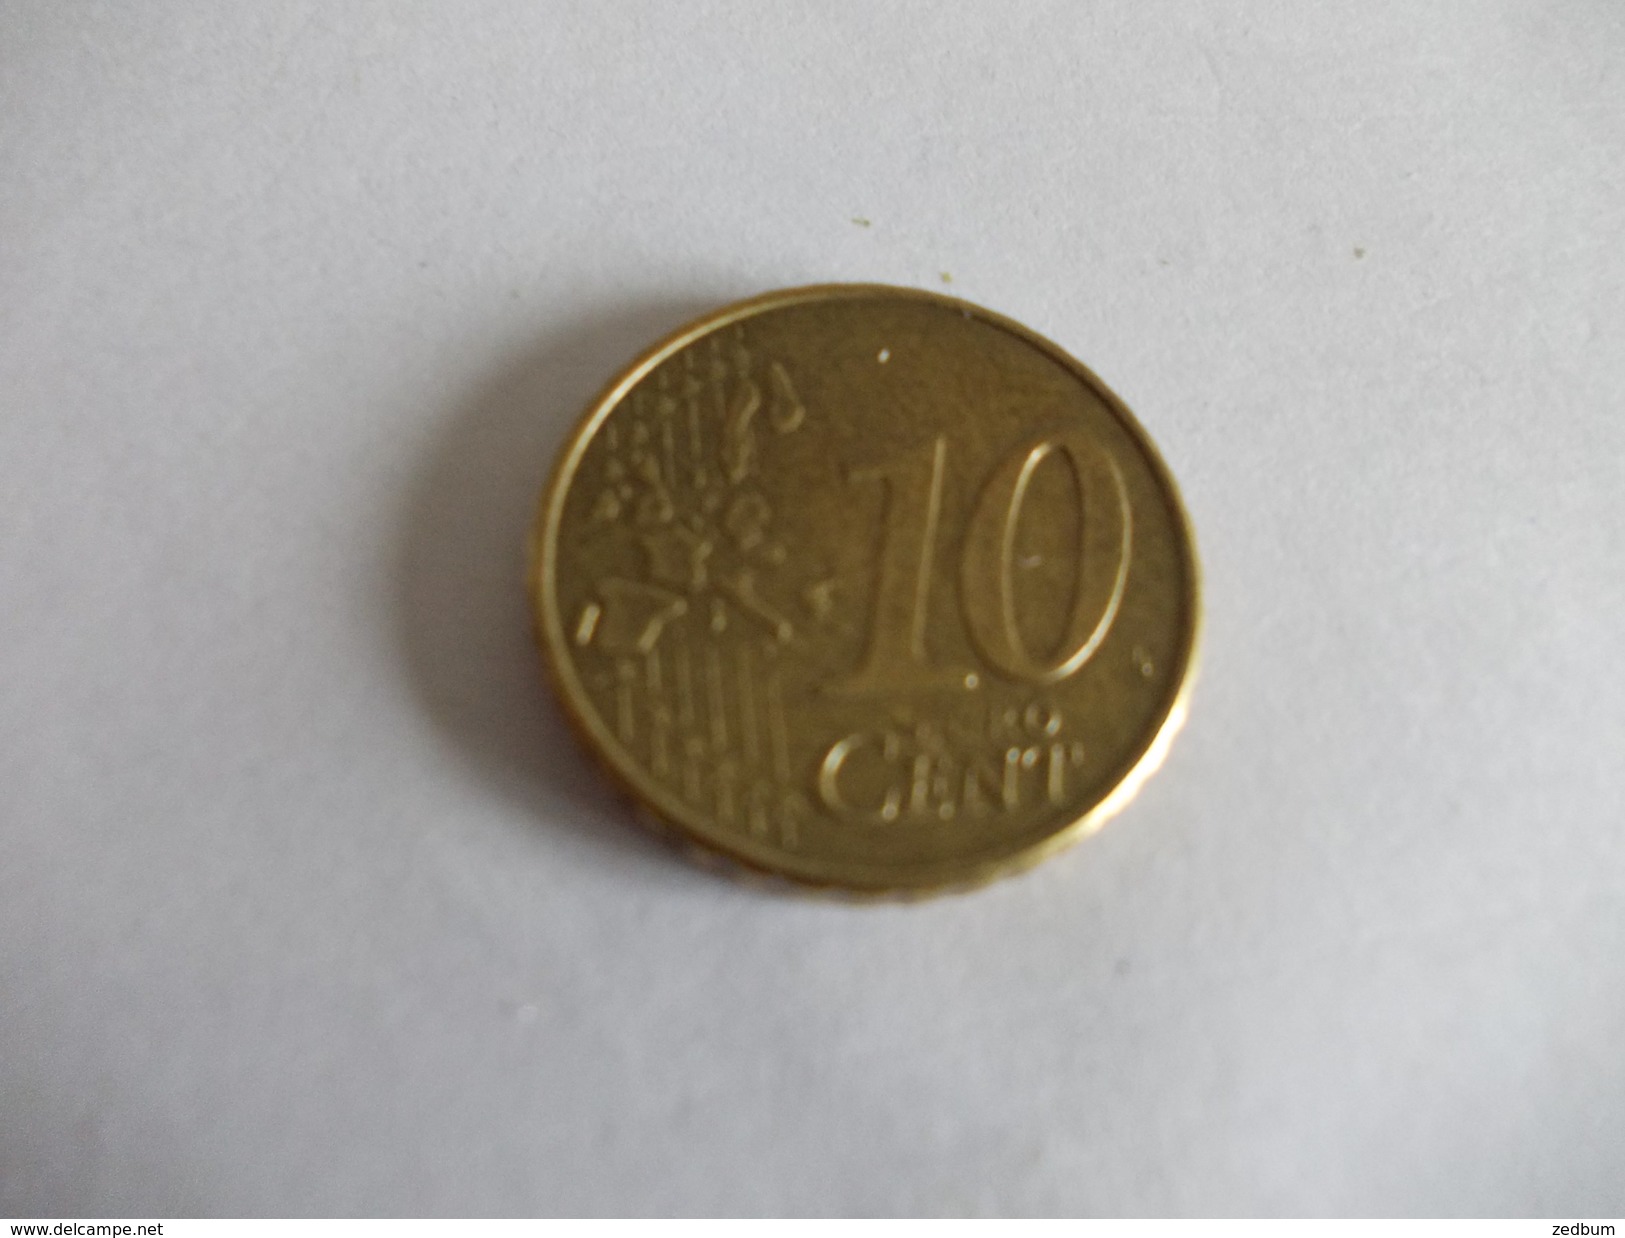 Monnaie Pièce De 10 Centimes D' Euro De Irlande Année 2002 Valeur Argus 2 &euro; - Ireland